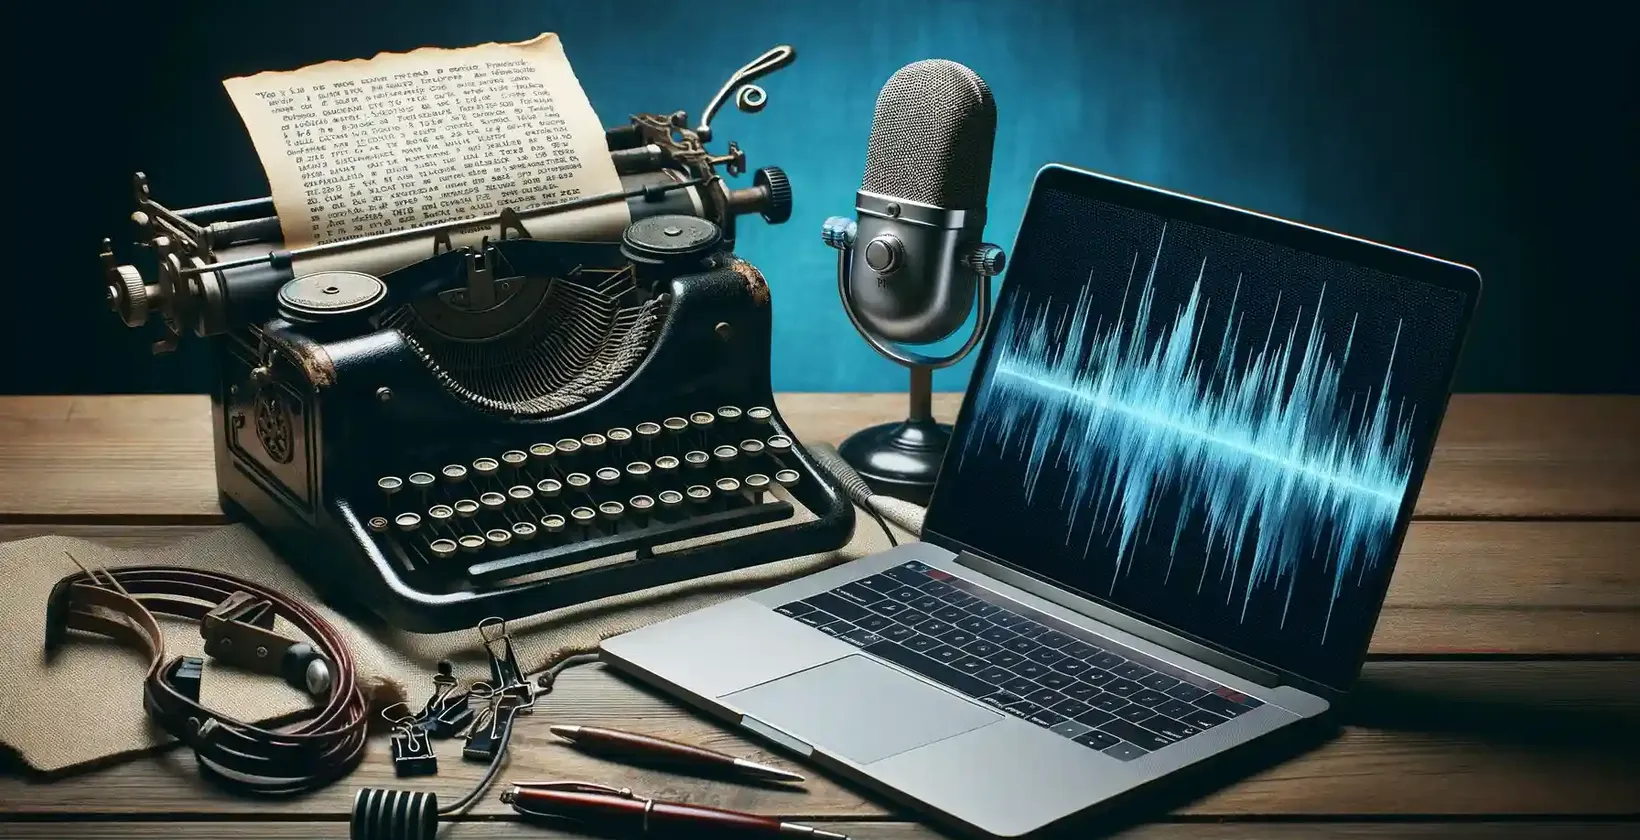 Kirjutajatele mõeldud transkriptsioonitarkvara, mida esindavad vana kirjutusmasin, trükitud tekst, mikrofon ja sülearvuti.